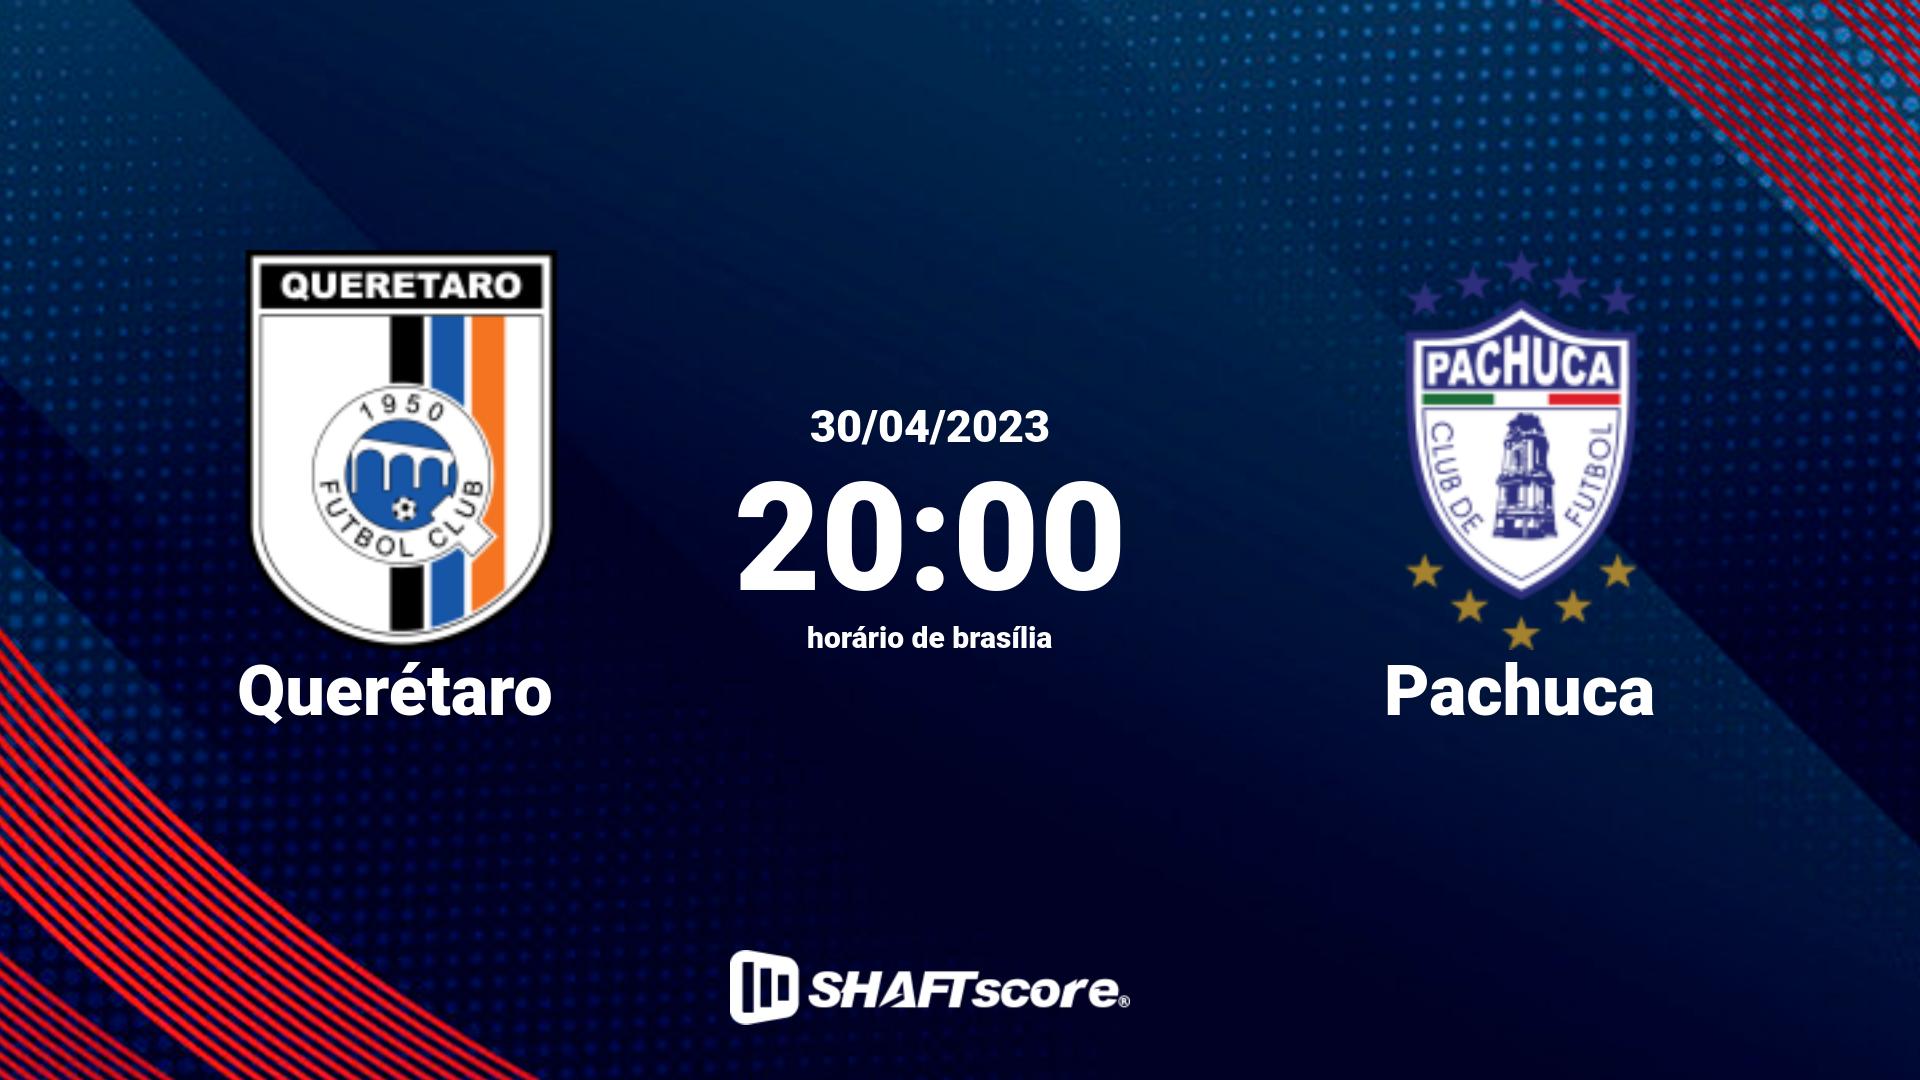 Estatísticas do jogo Querétaro vs Pachuca 30.04 20:00